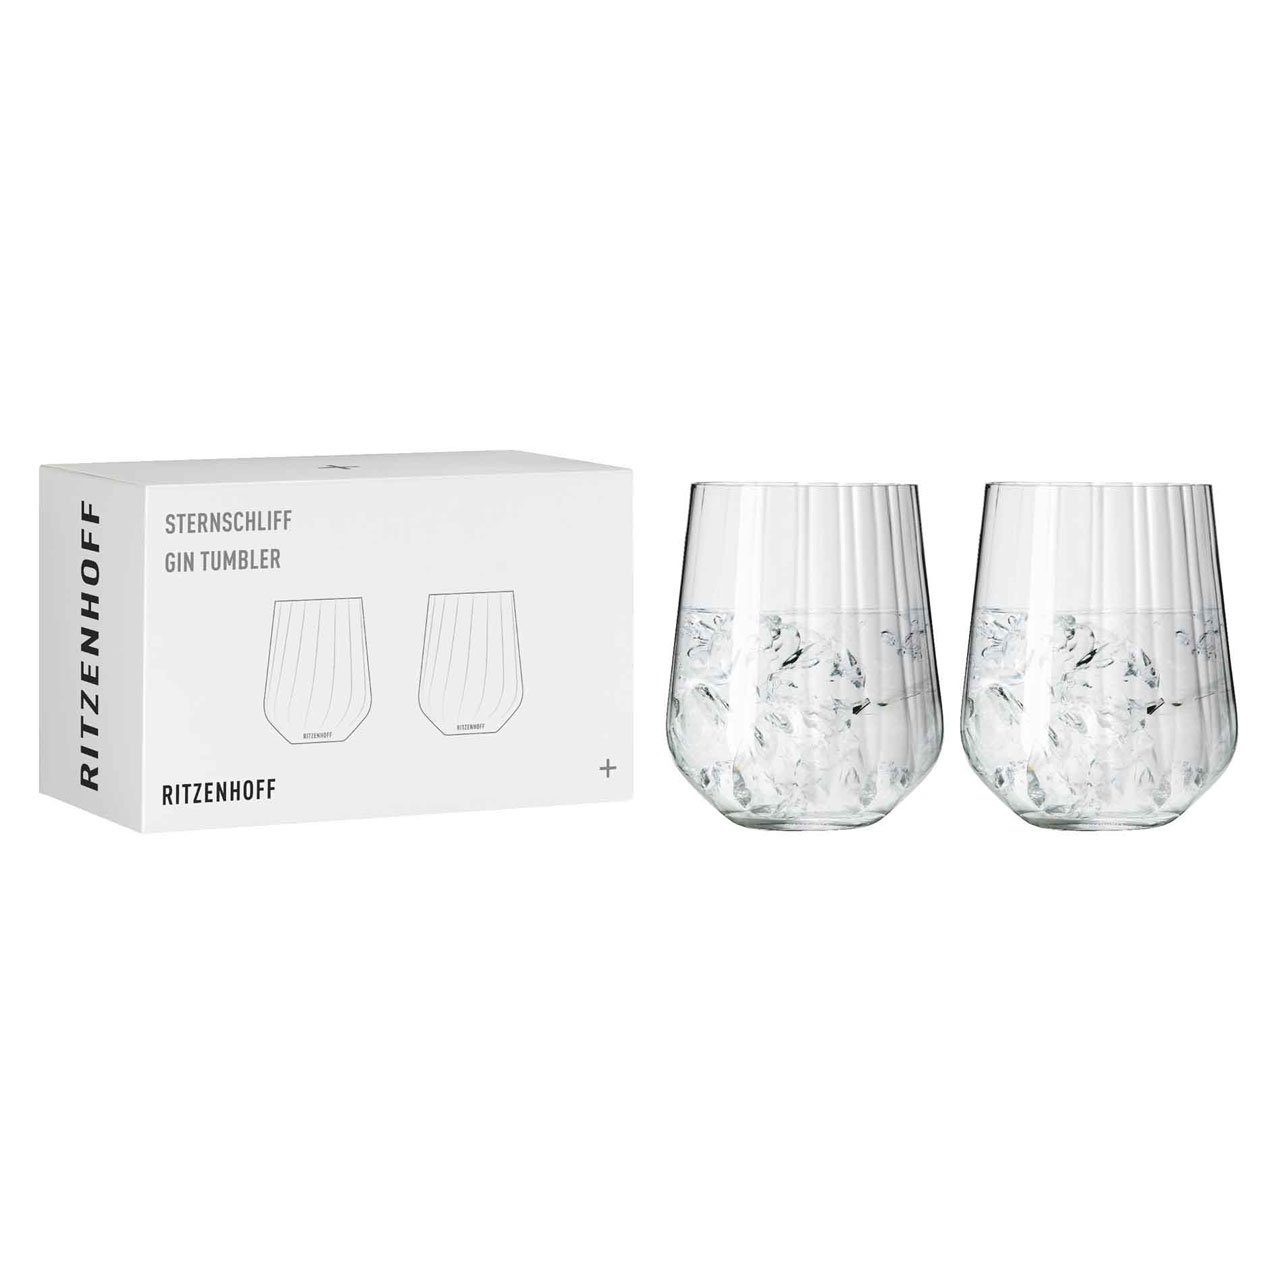 Ritzenhoff Sternschliff 4er, Tumbler Dekomiro Kristallglas Tumbler-Glas Gin Dekomiro